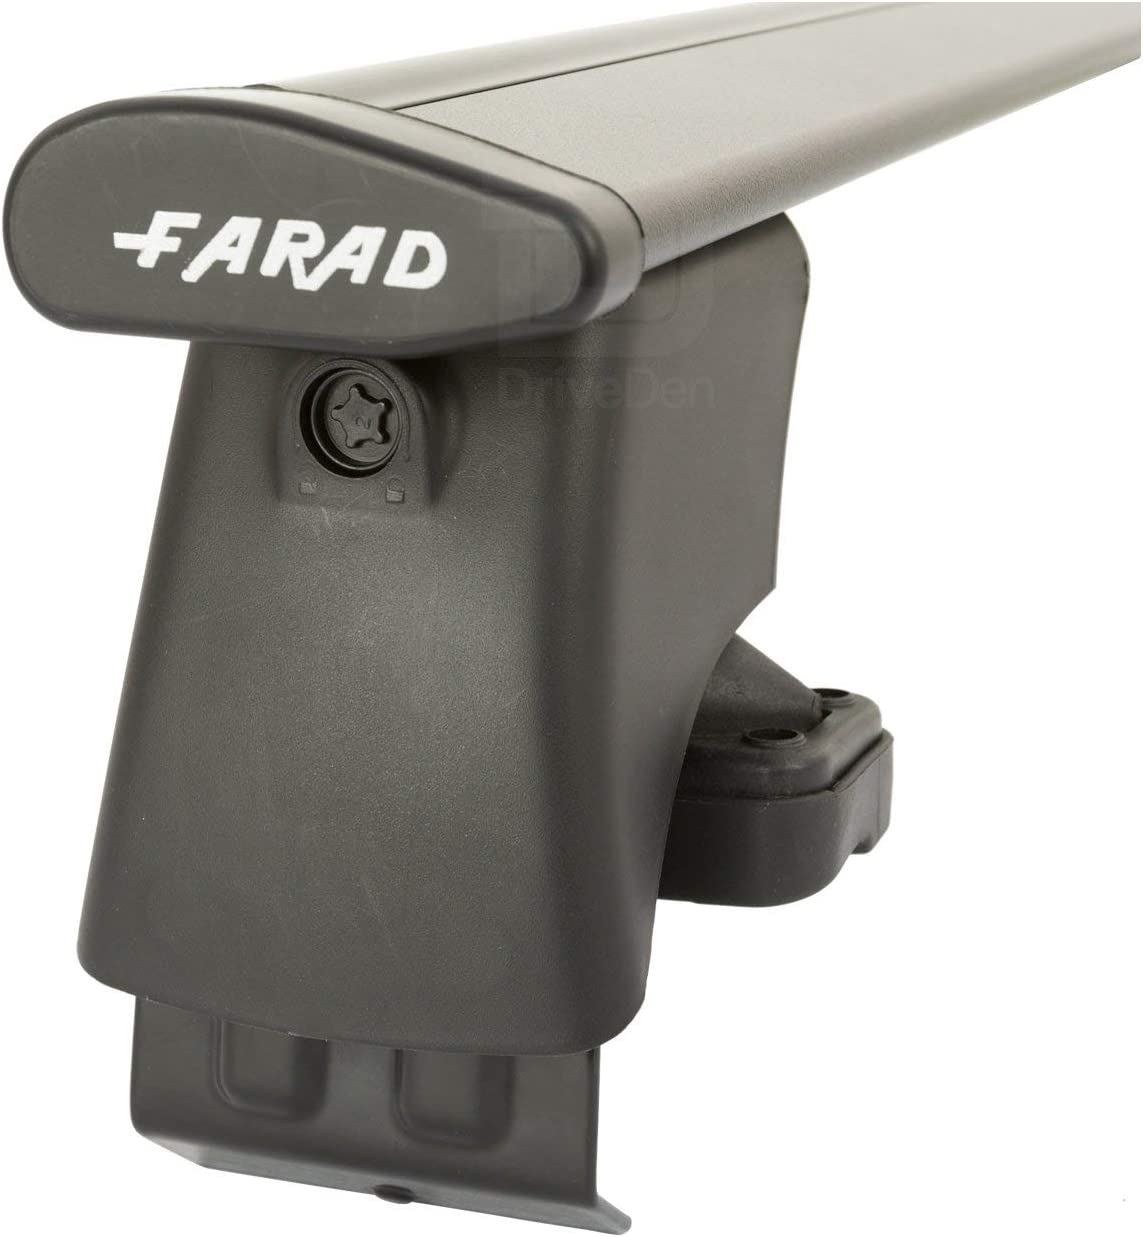 FARAD-Kit H2 per barre portatutto - Fiat 500 / 500 Skydome 2007> (senza corrimano)